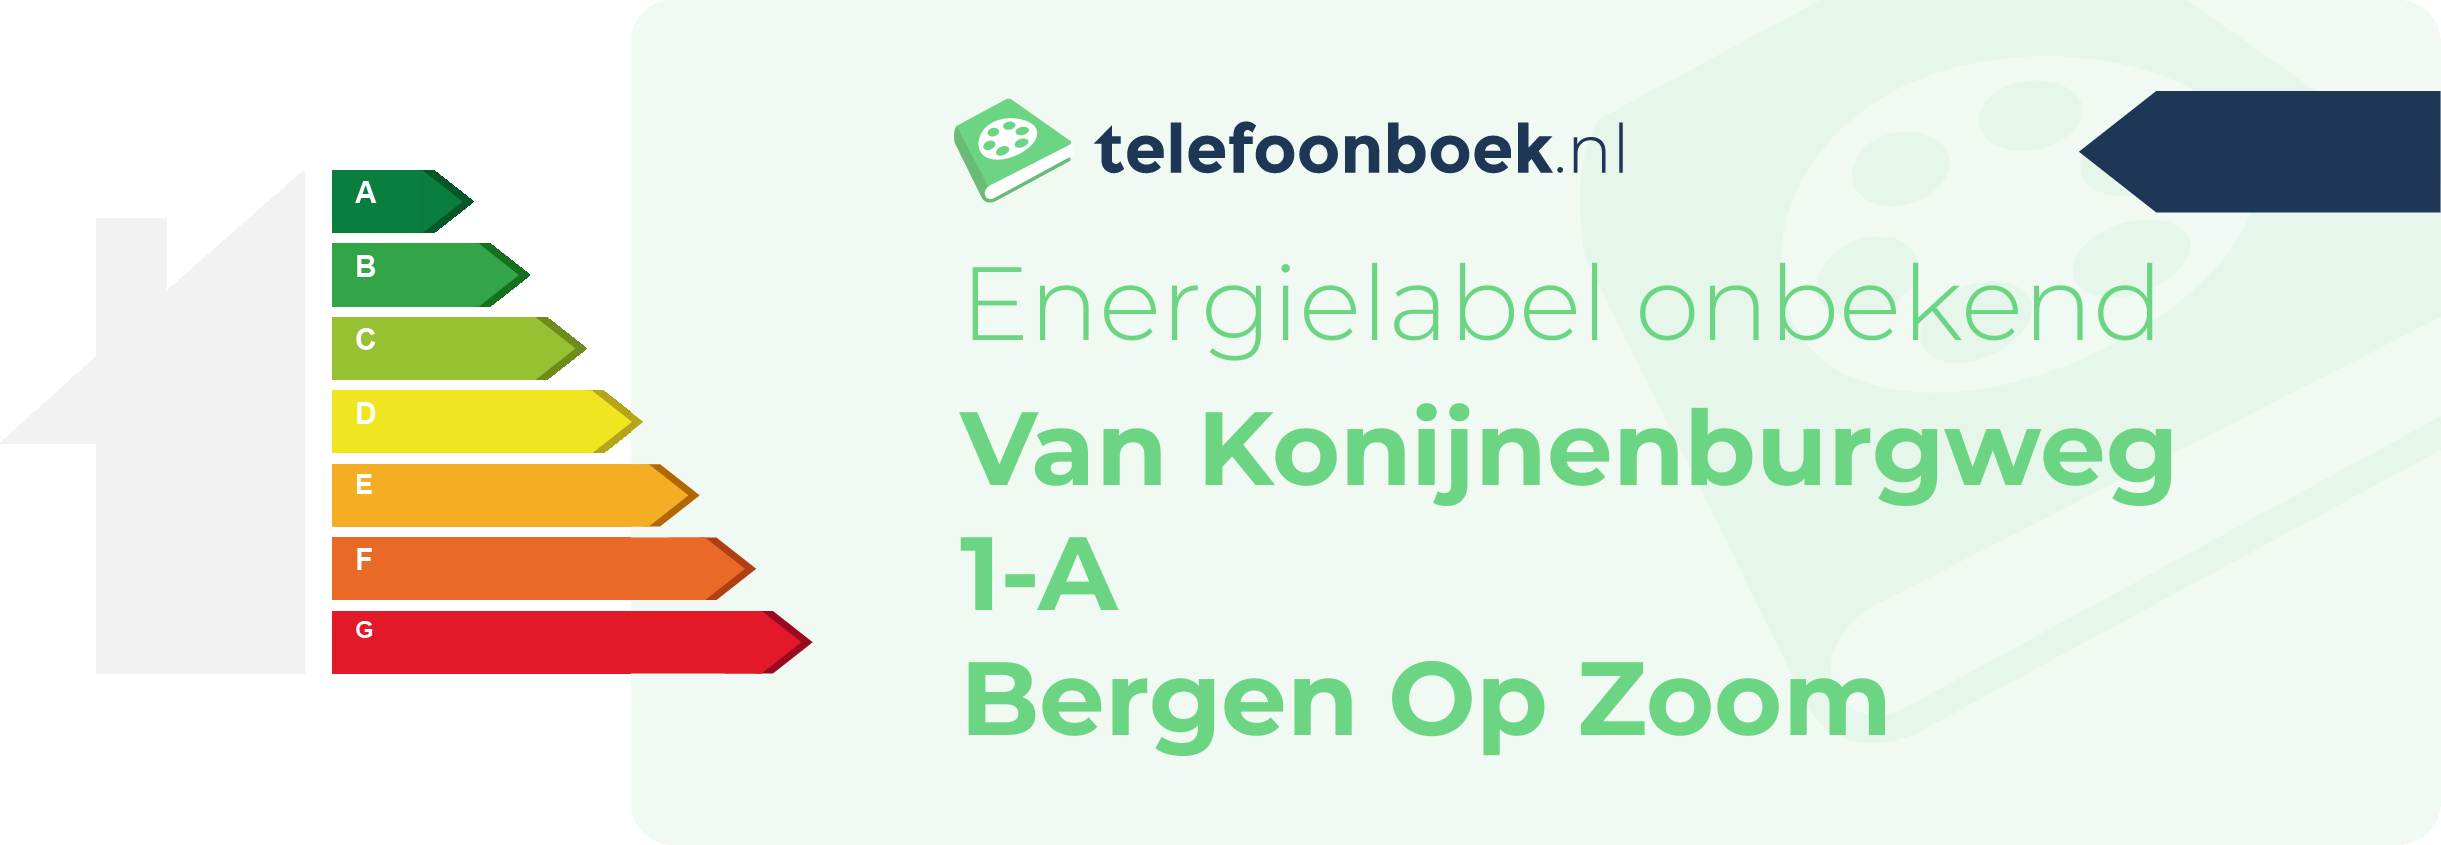 Energielabel Van Konijnenburgweg 1-A Bergen Op Zoom